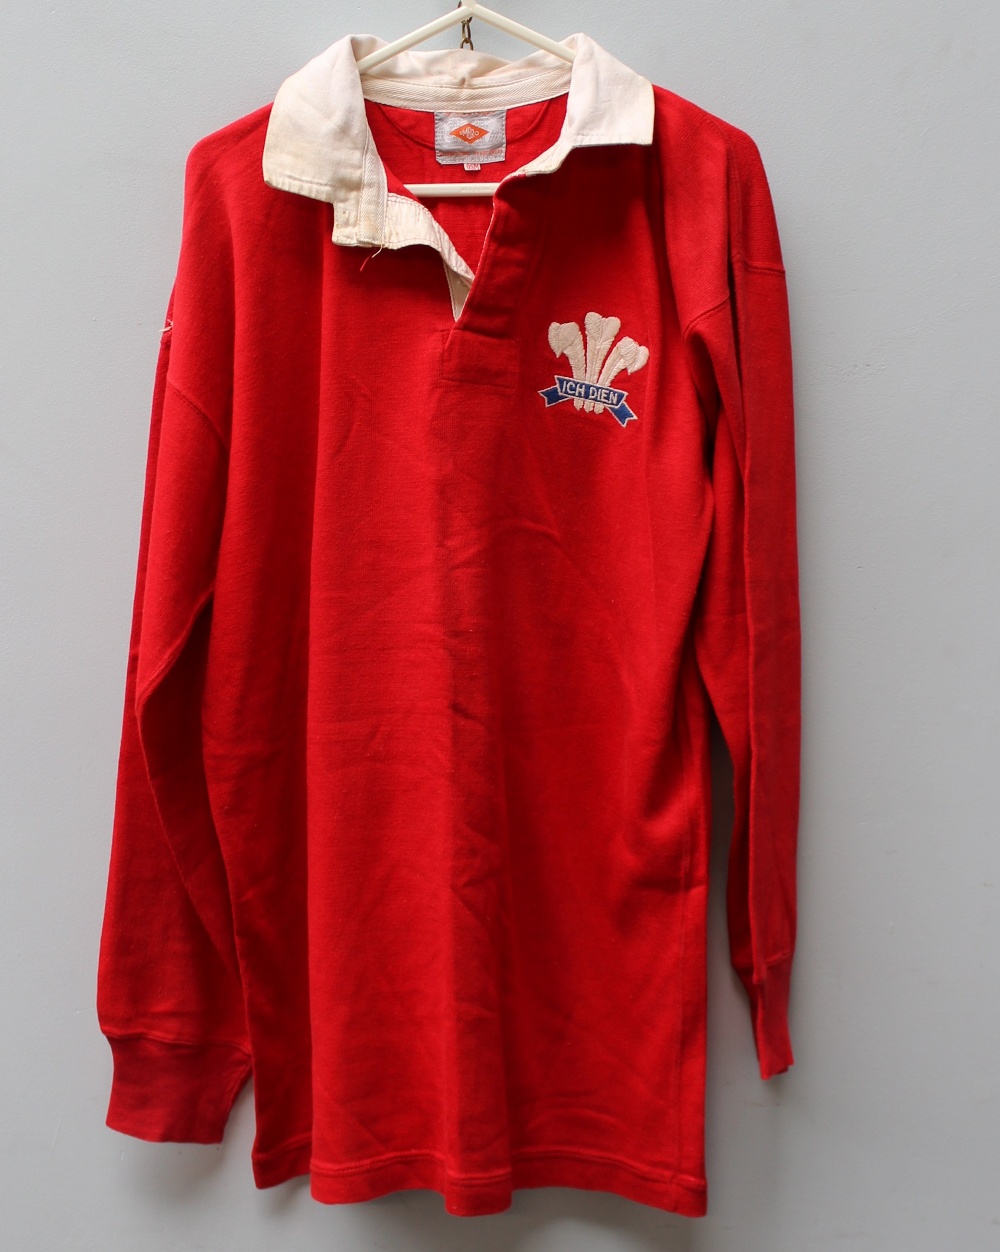 Allan Martin - A Welsh International match worn jersey,